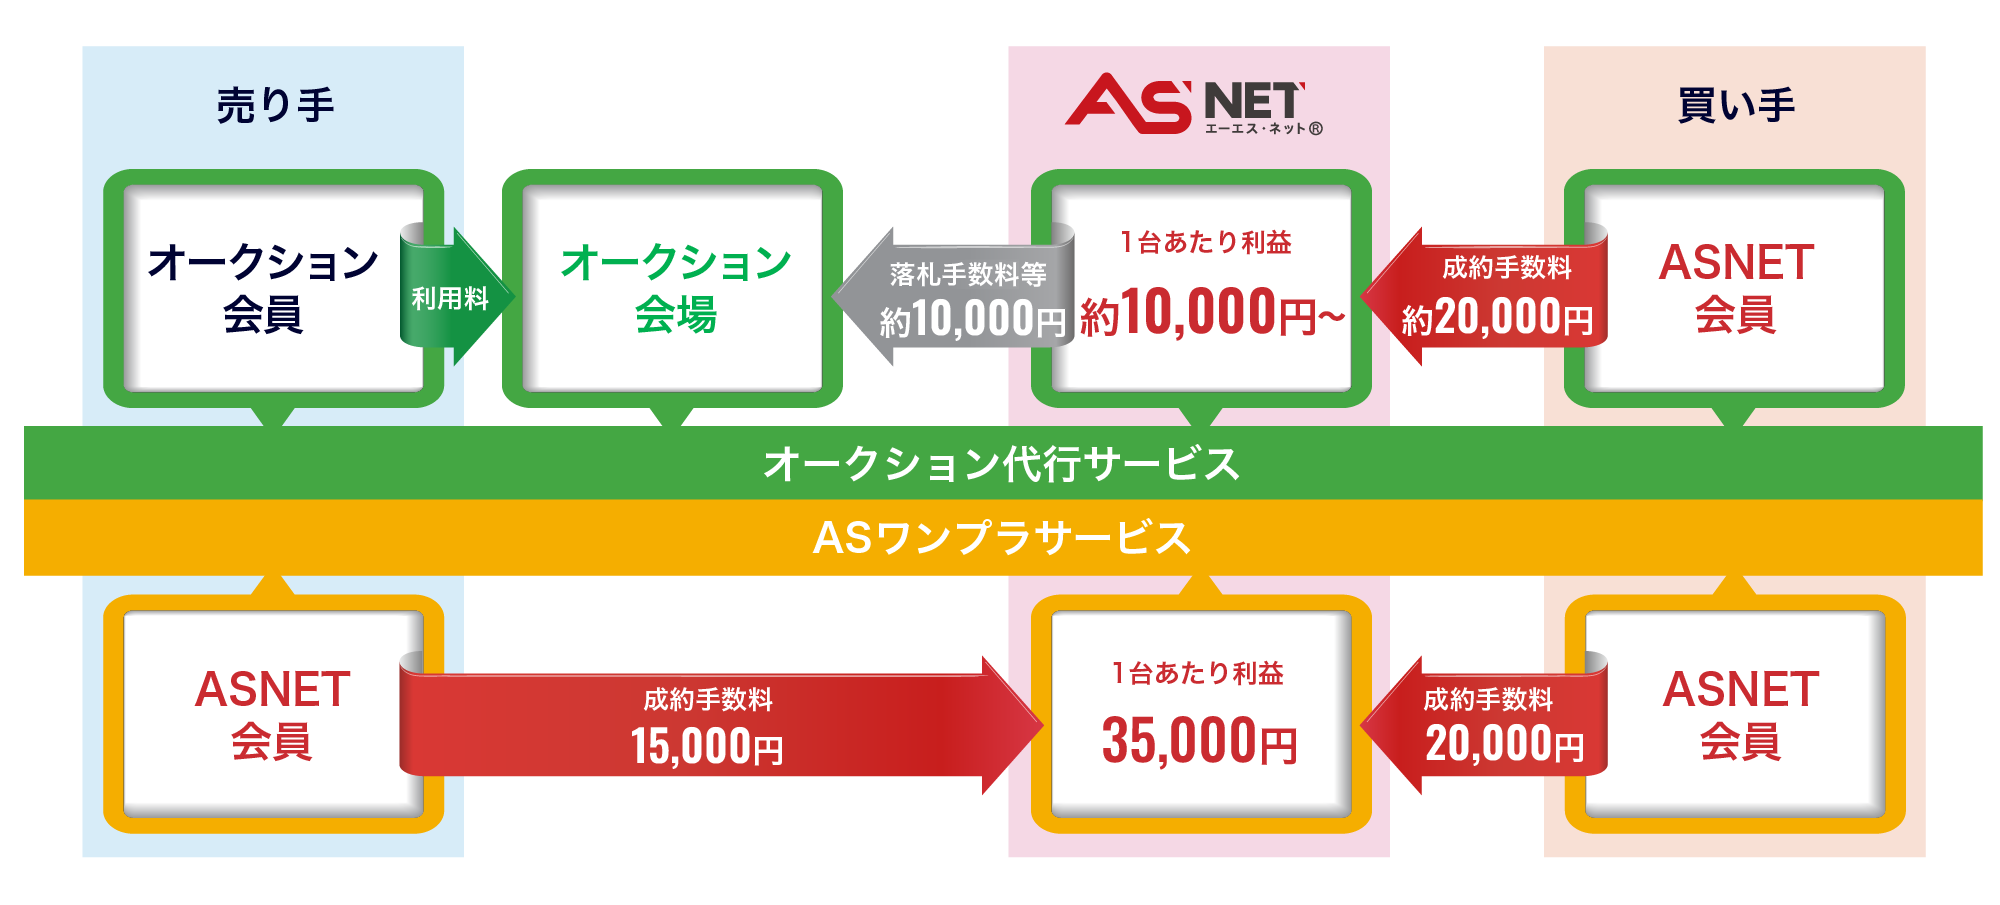 ASNET事業の収益構造